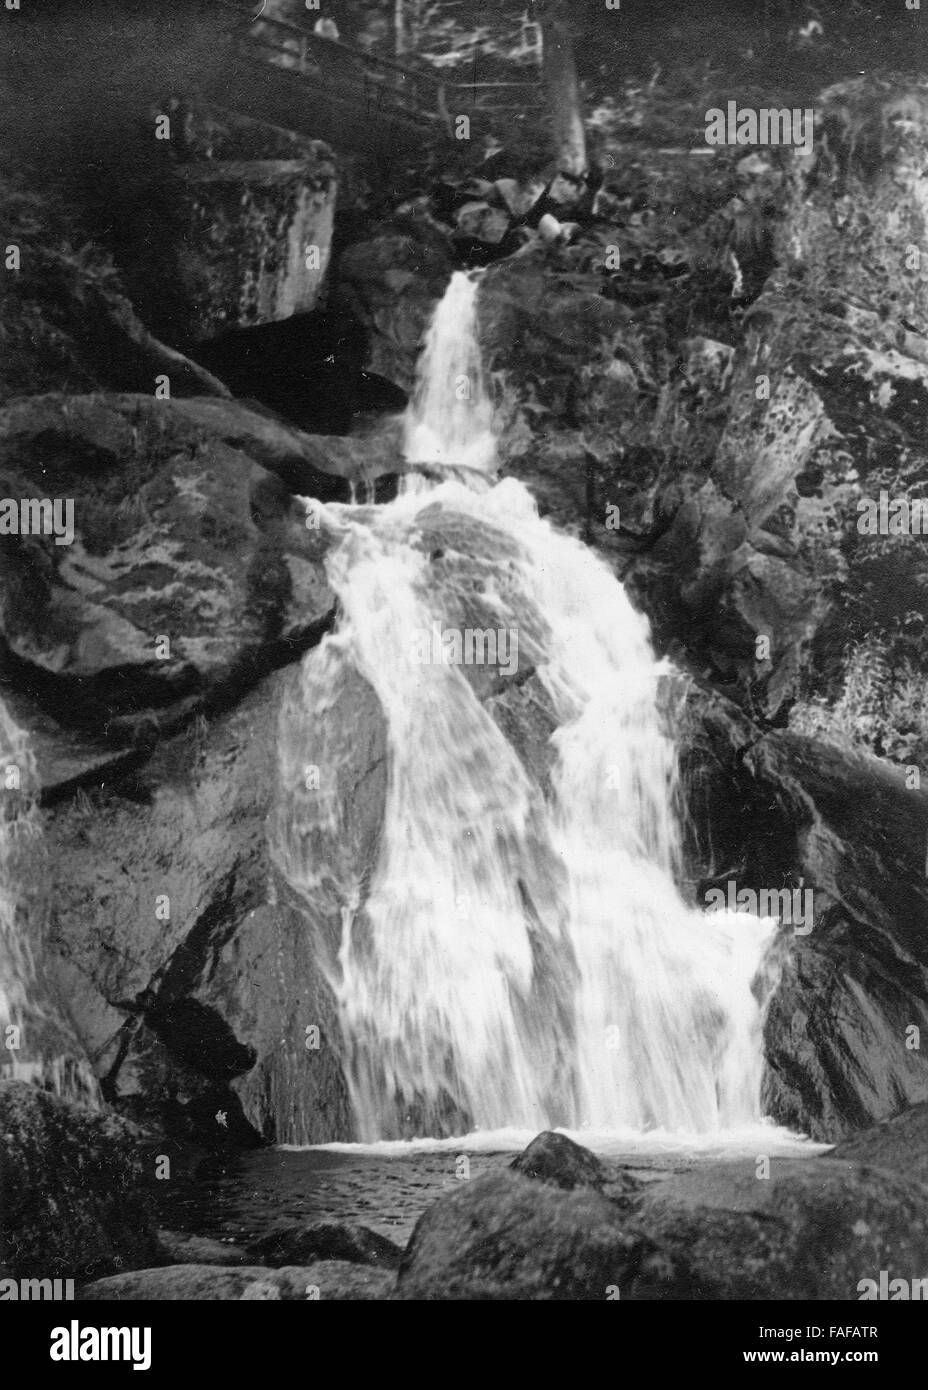 Die Triberger Wasserfälle im Schwarzwald, Deutschland 1930er Jahre. Triberg waterfalls at Black Forest, Germany 1930s. Stock Photo